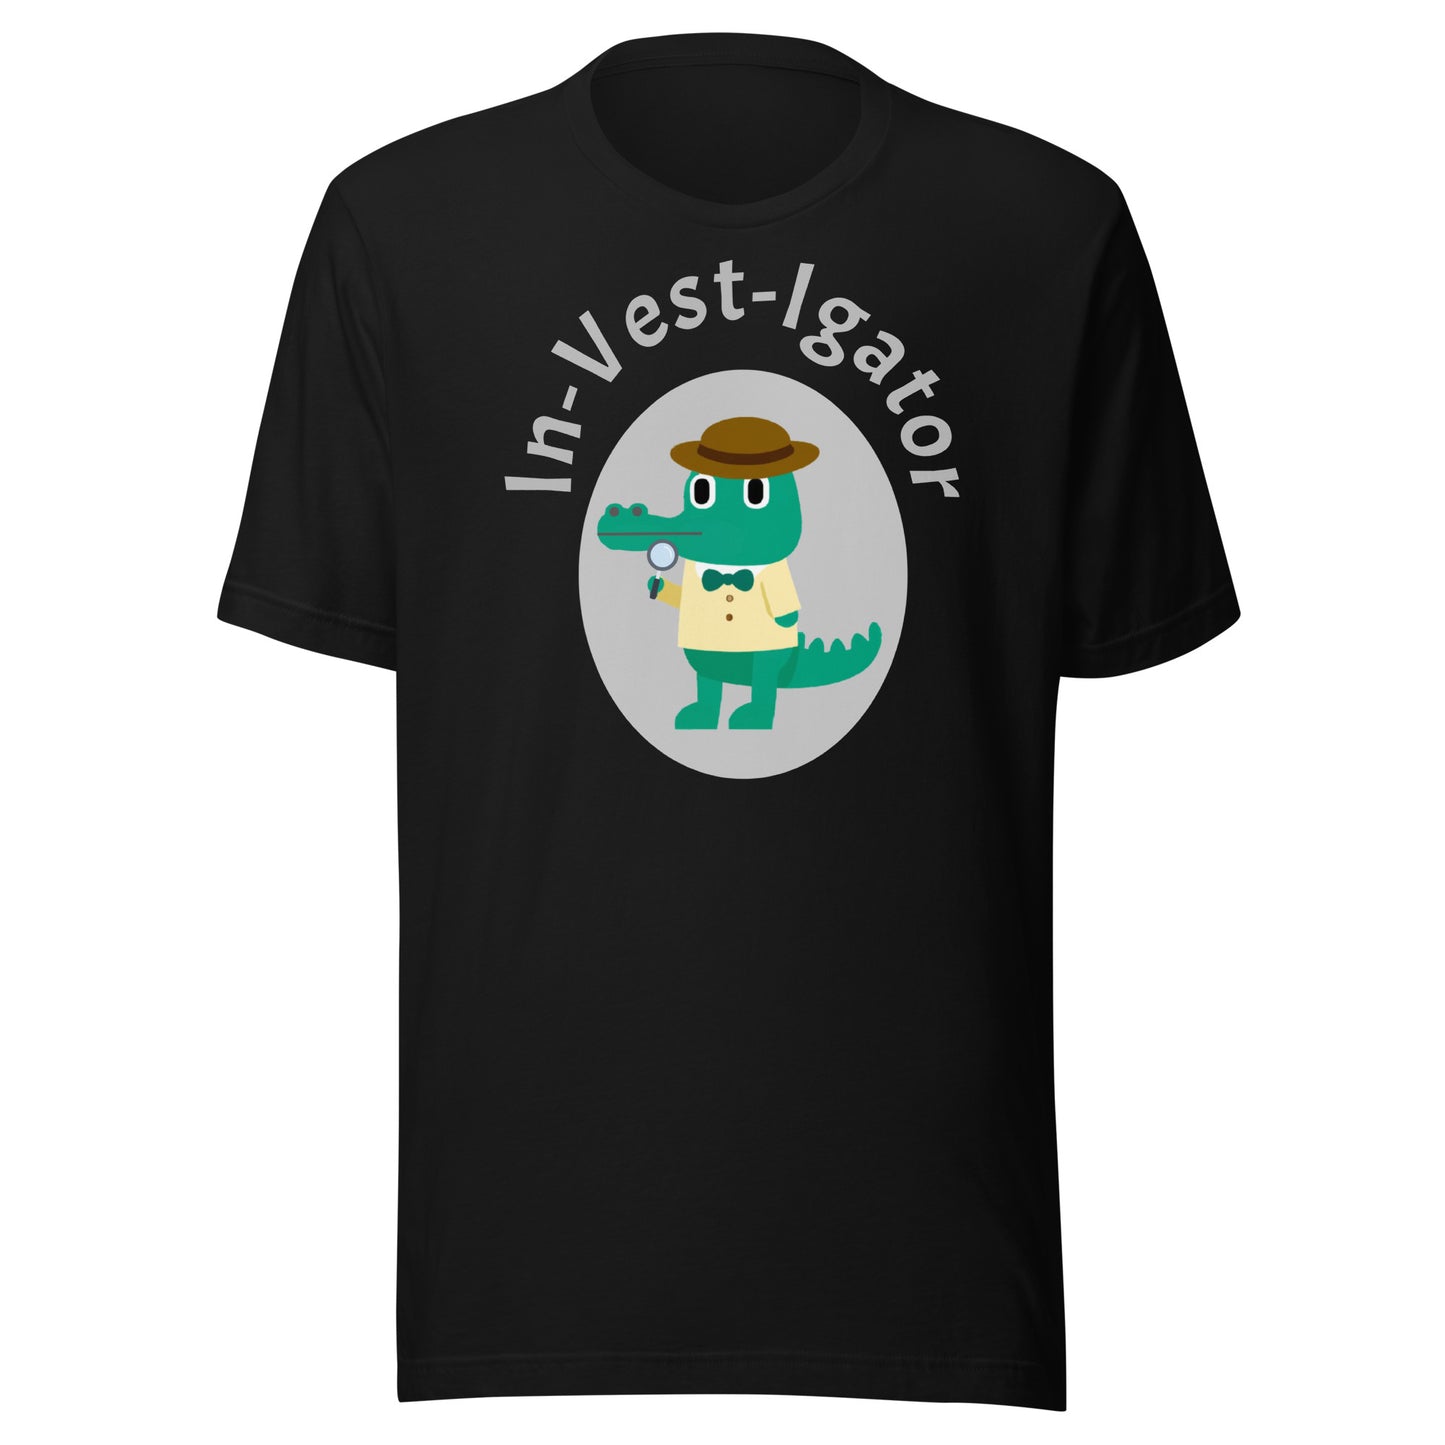 Alligator In A Vest t-shirt